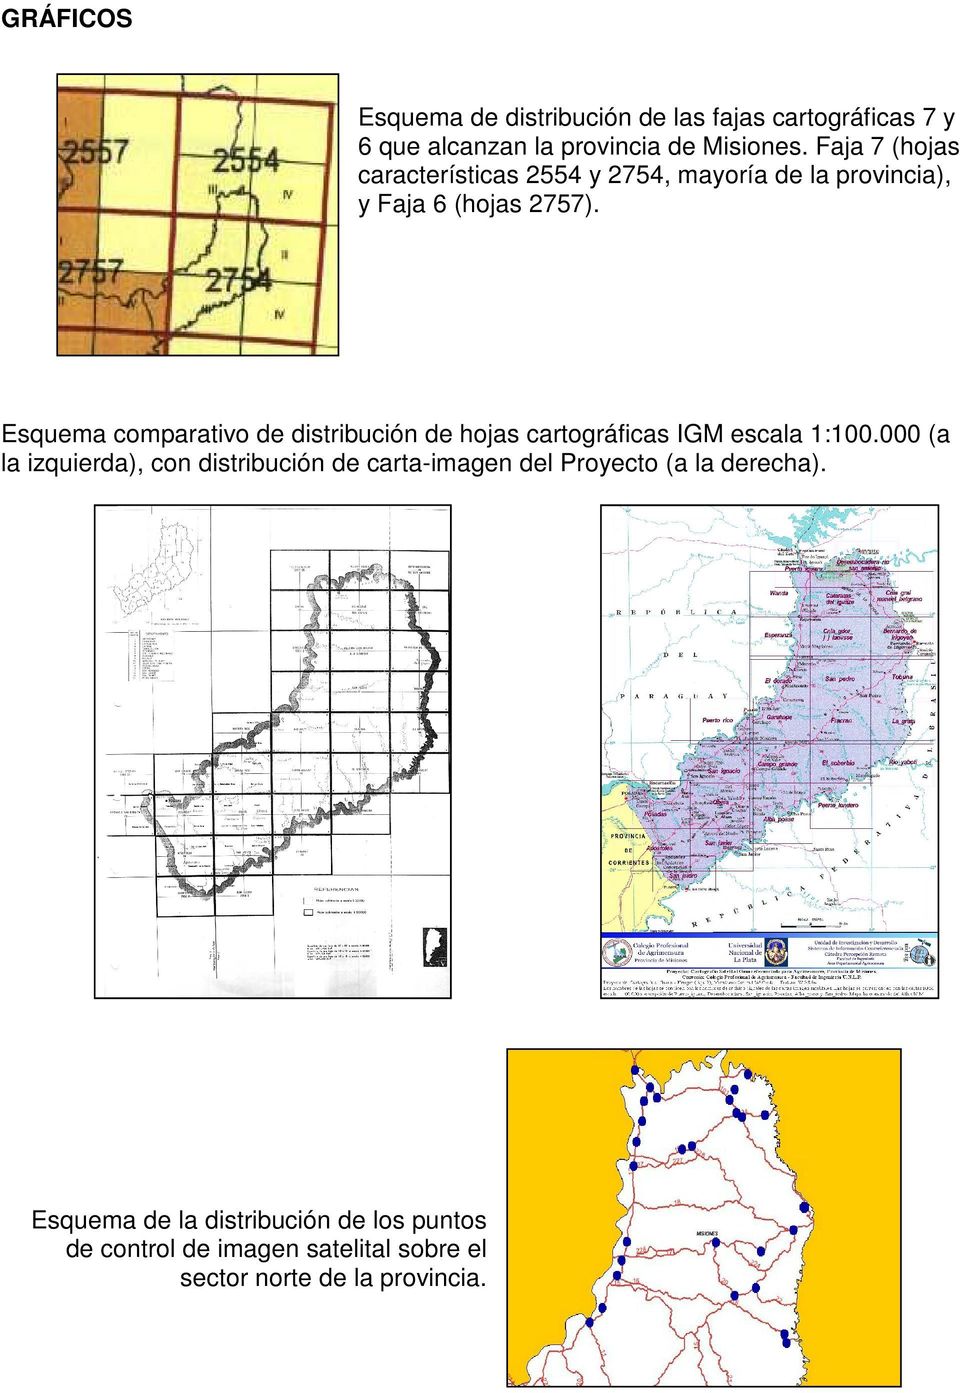 Esquema comparativo de distribución de hojas cartográficas IGM escala 1:100.